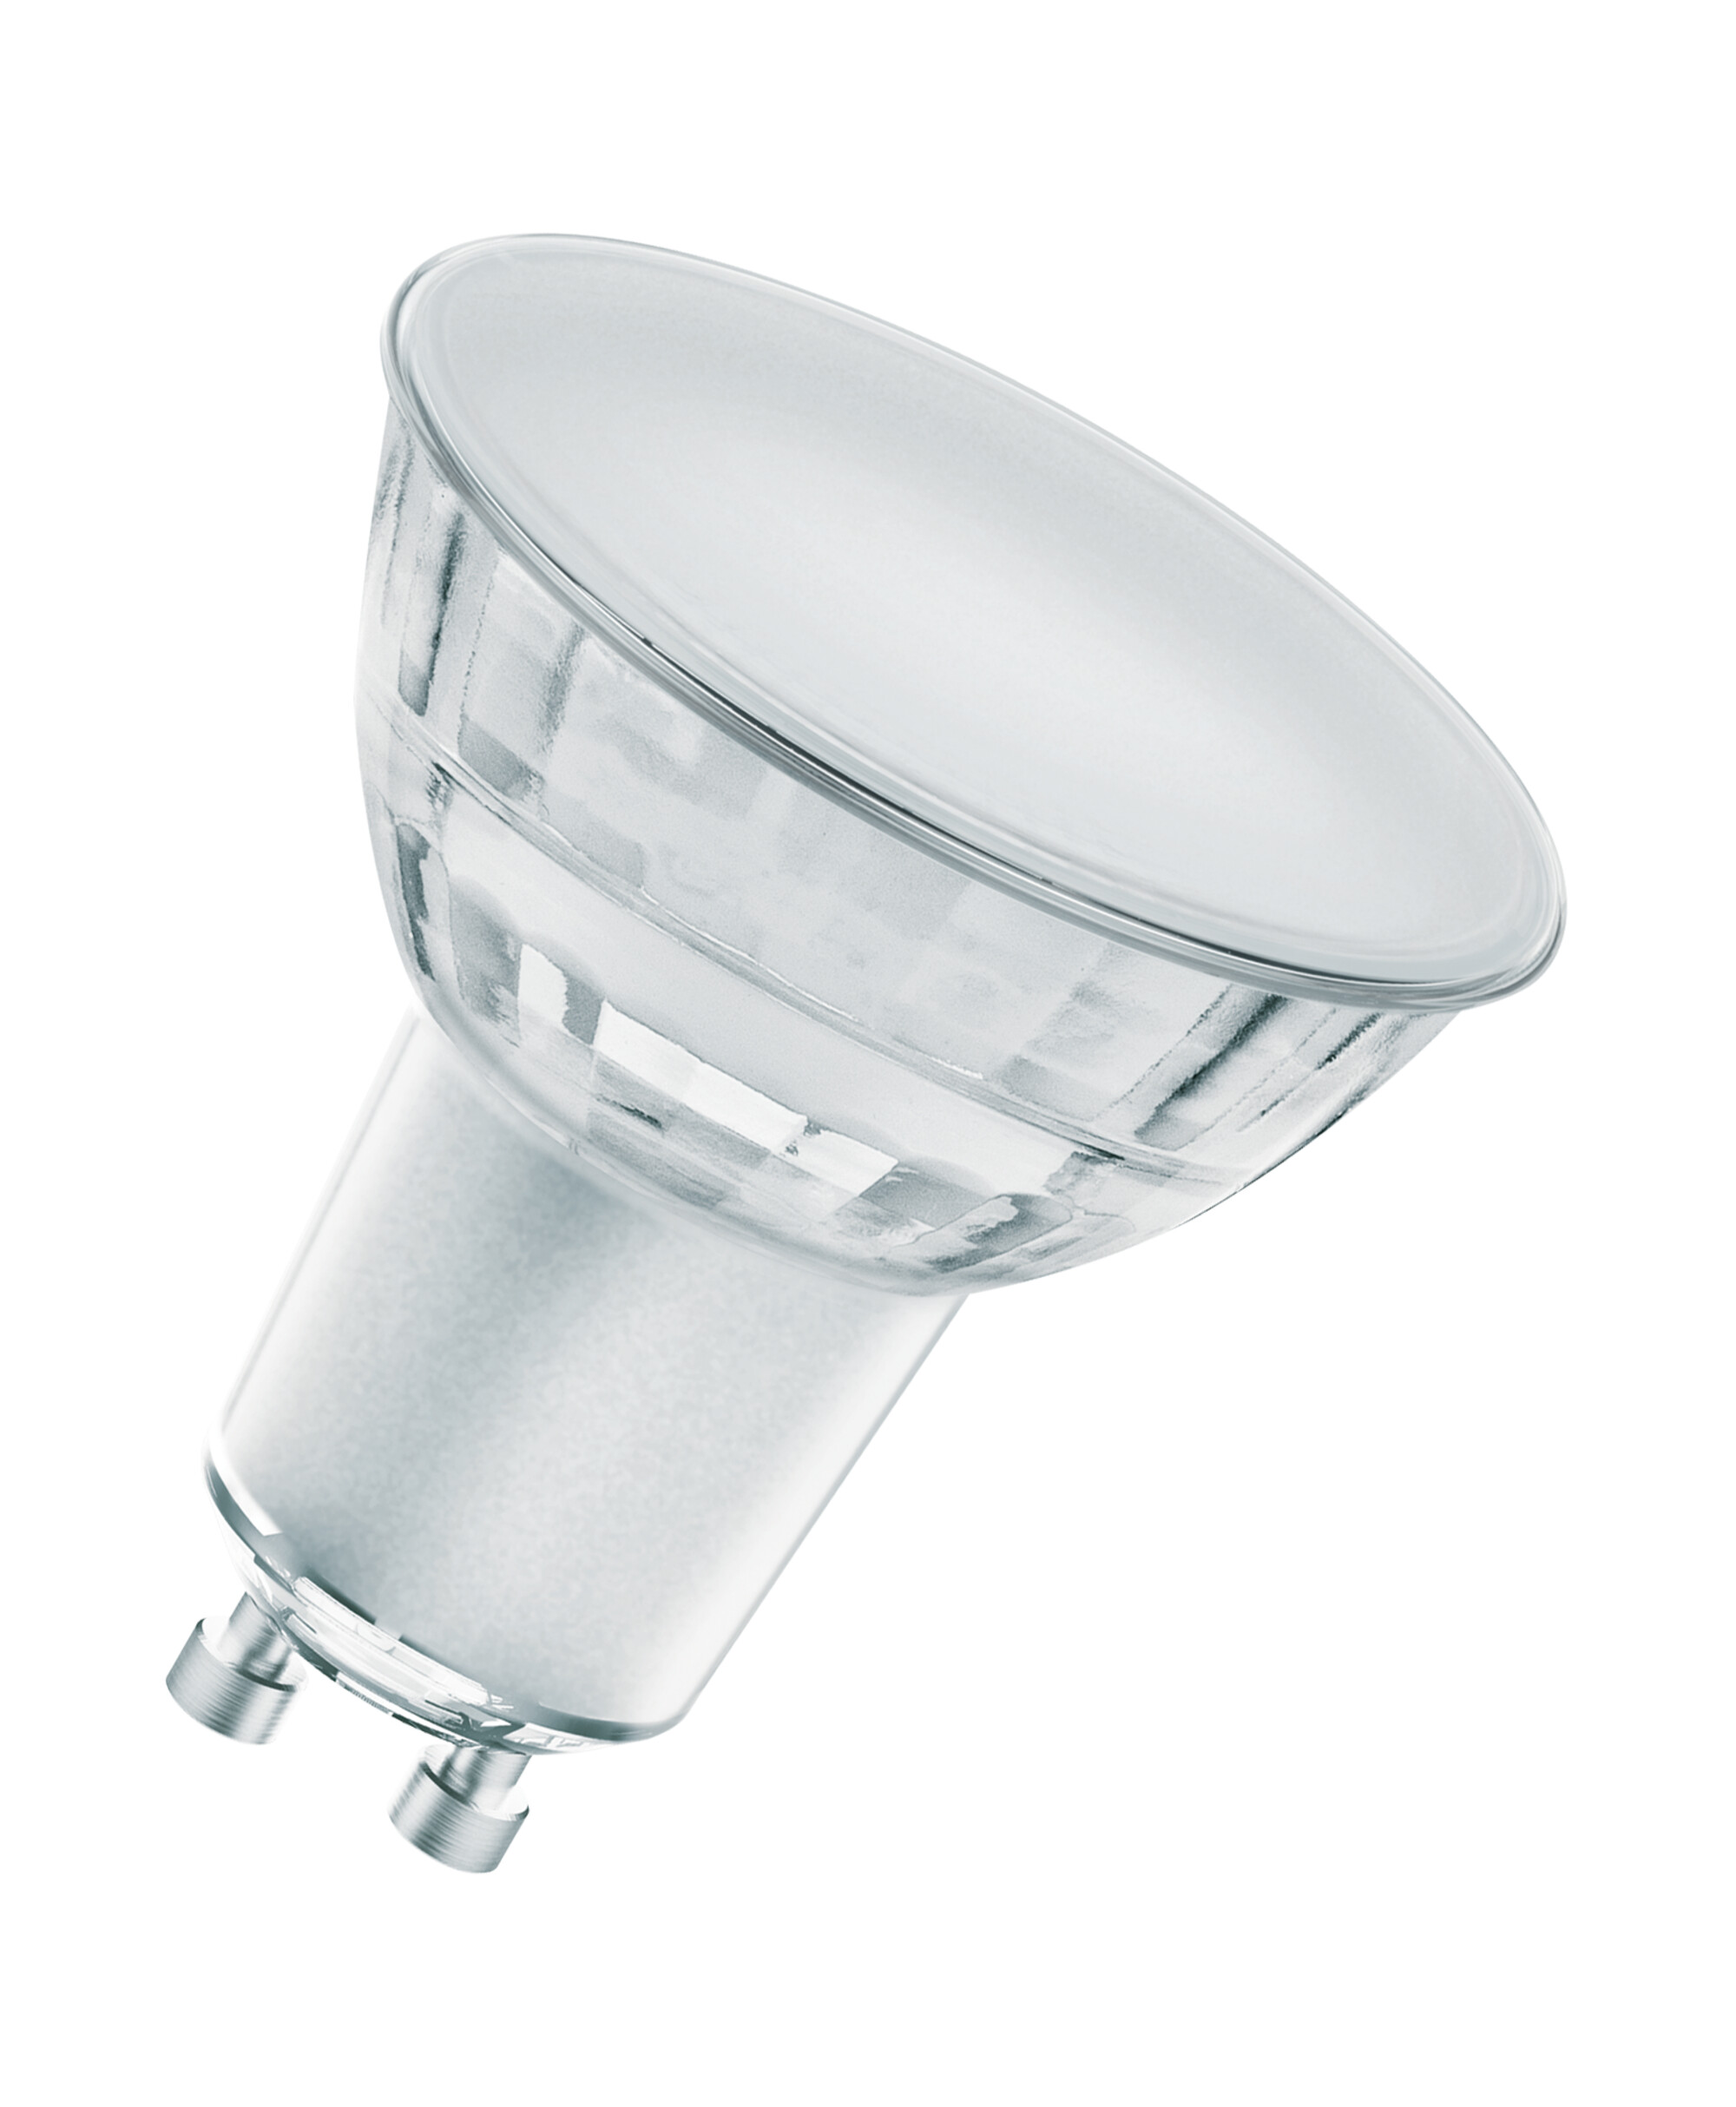 Osram LED PAR16 P Reflektorlampe 5,7 Watt 120 Grad GU10 927 warmweiß extra